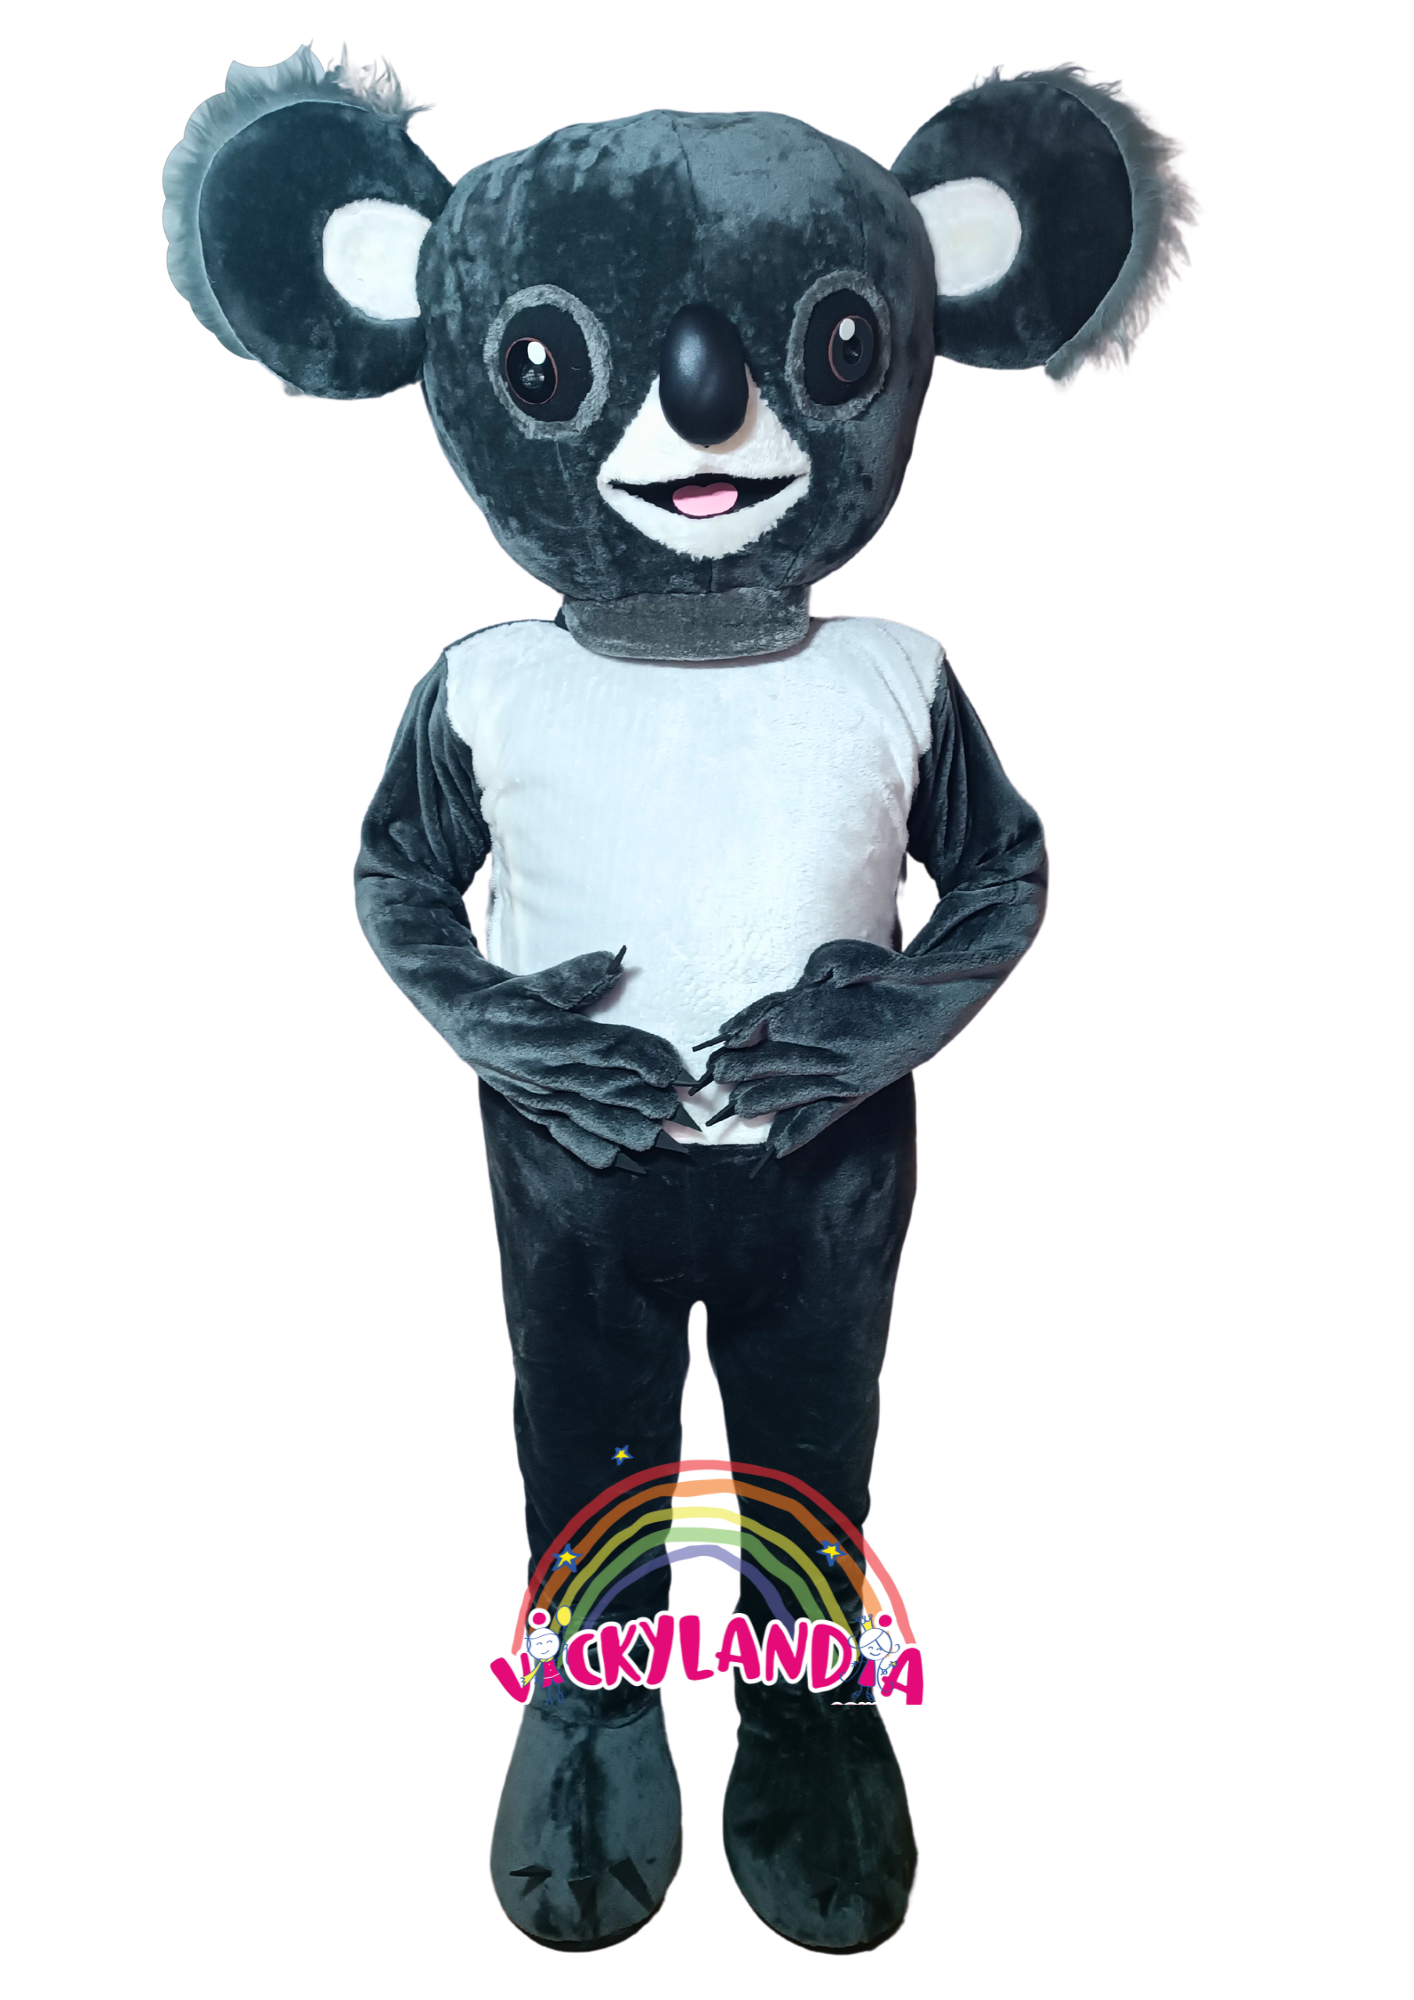 Descubre la magia de nuestro muñeco publicitario de Koala en Vickylandia. Son disfraces cabezones perfectos para fiestas infantiles, shows, cumpleaños, estrategias publicitarias, carnavales, fiestas patronales, espectáculos, cabalgatas y cualquier tipo de evento